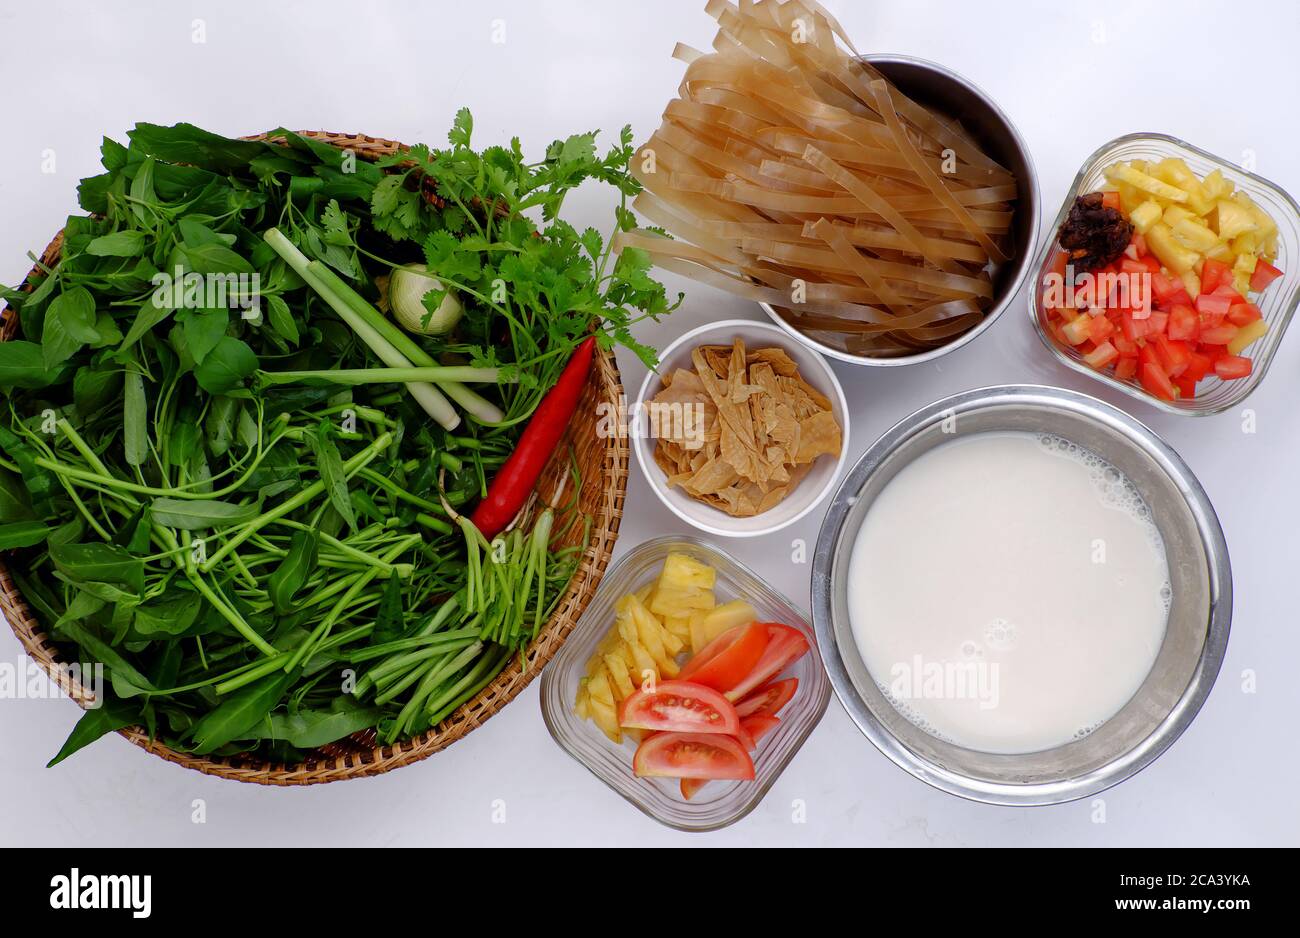 Materia prima para hacer comida vegetariana para el desayuno con sopa de  fideos de papel seco de leche de soja hacer tofu por ingredientes agrios  como piña, tomate, tamarindo Fotografía de stock -